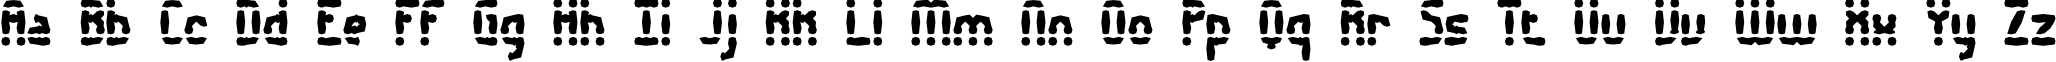 Пример написания английского алфавита шрифтом Amalgamate BRK